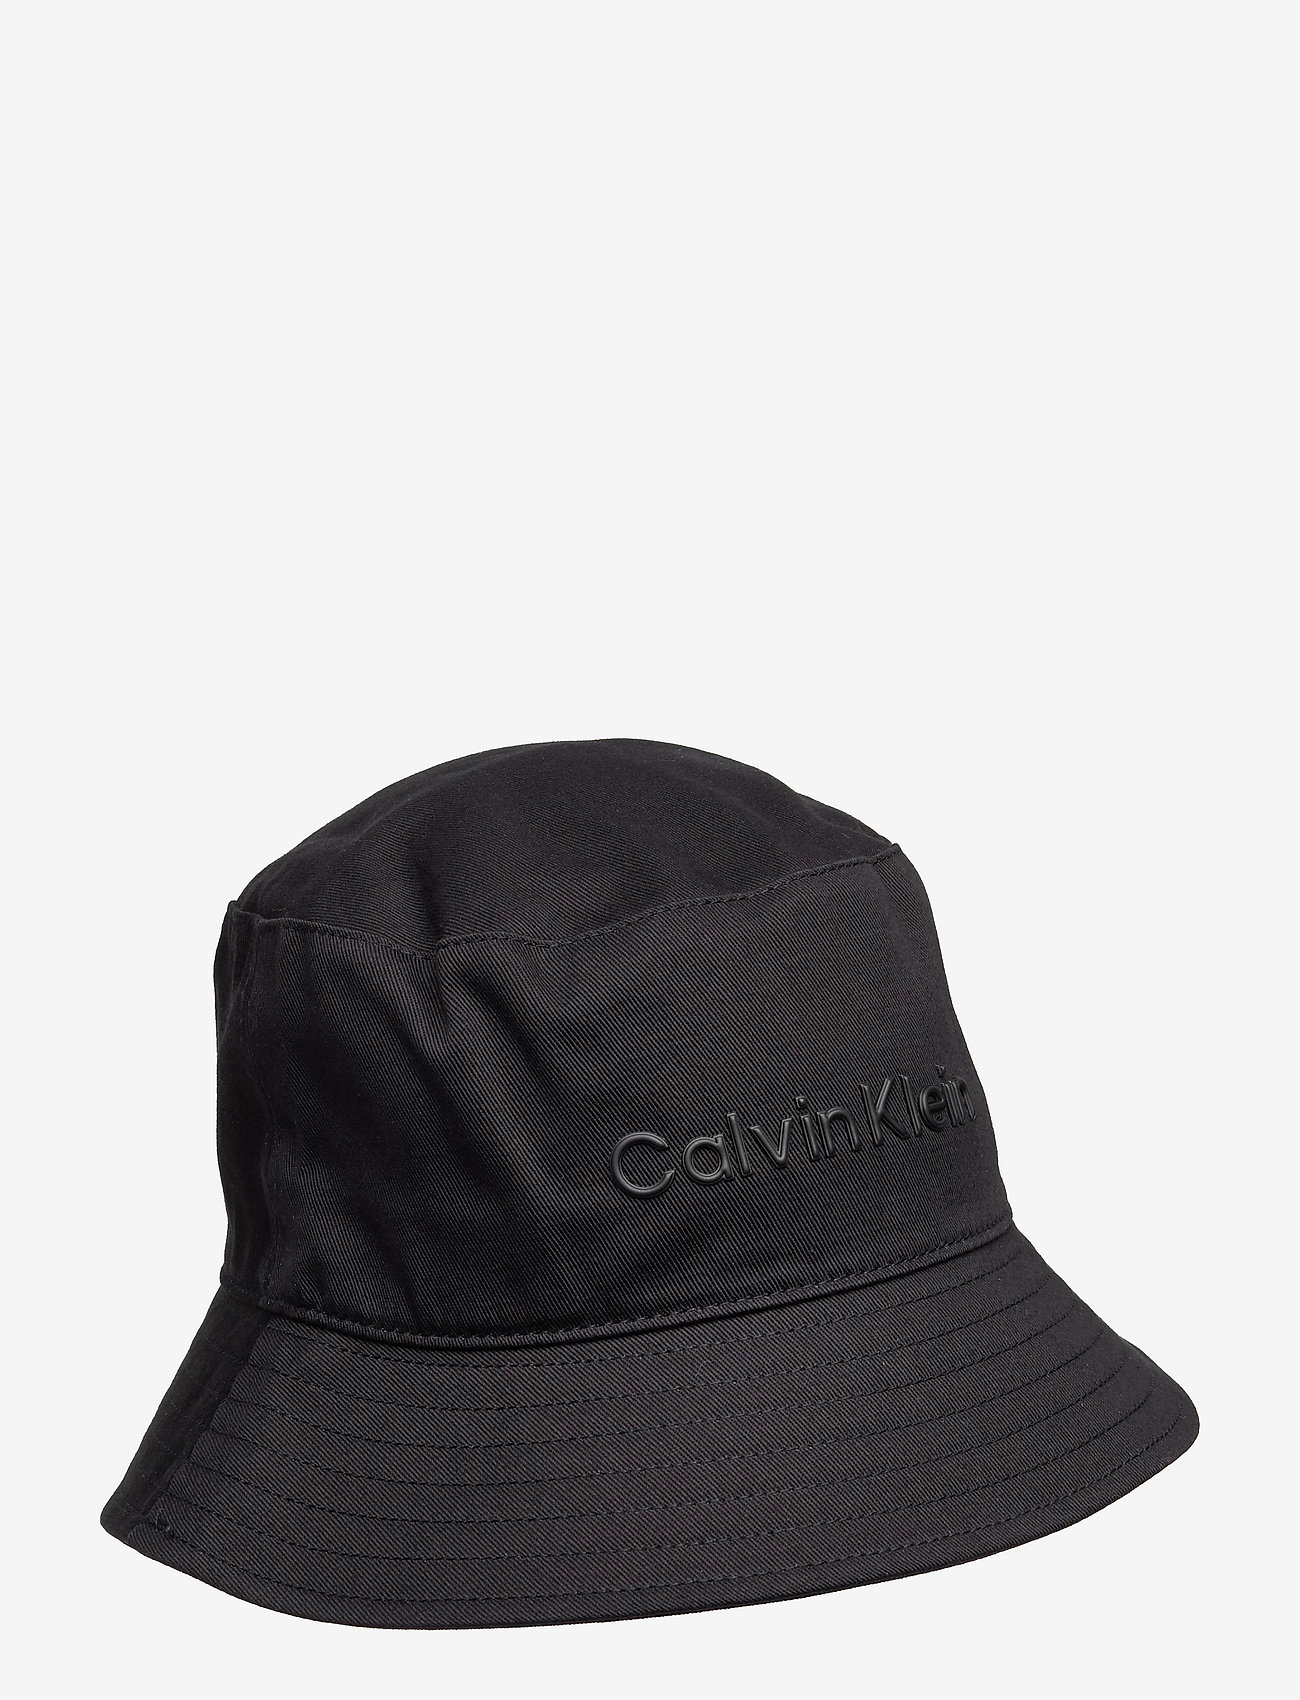 Calvin Klein Dark Essential Bucket Hat - Hats | Boozt.com